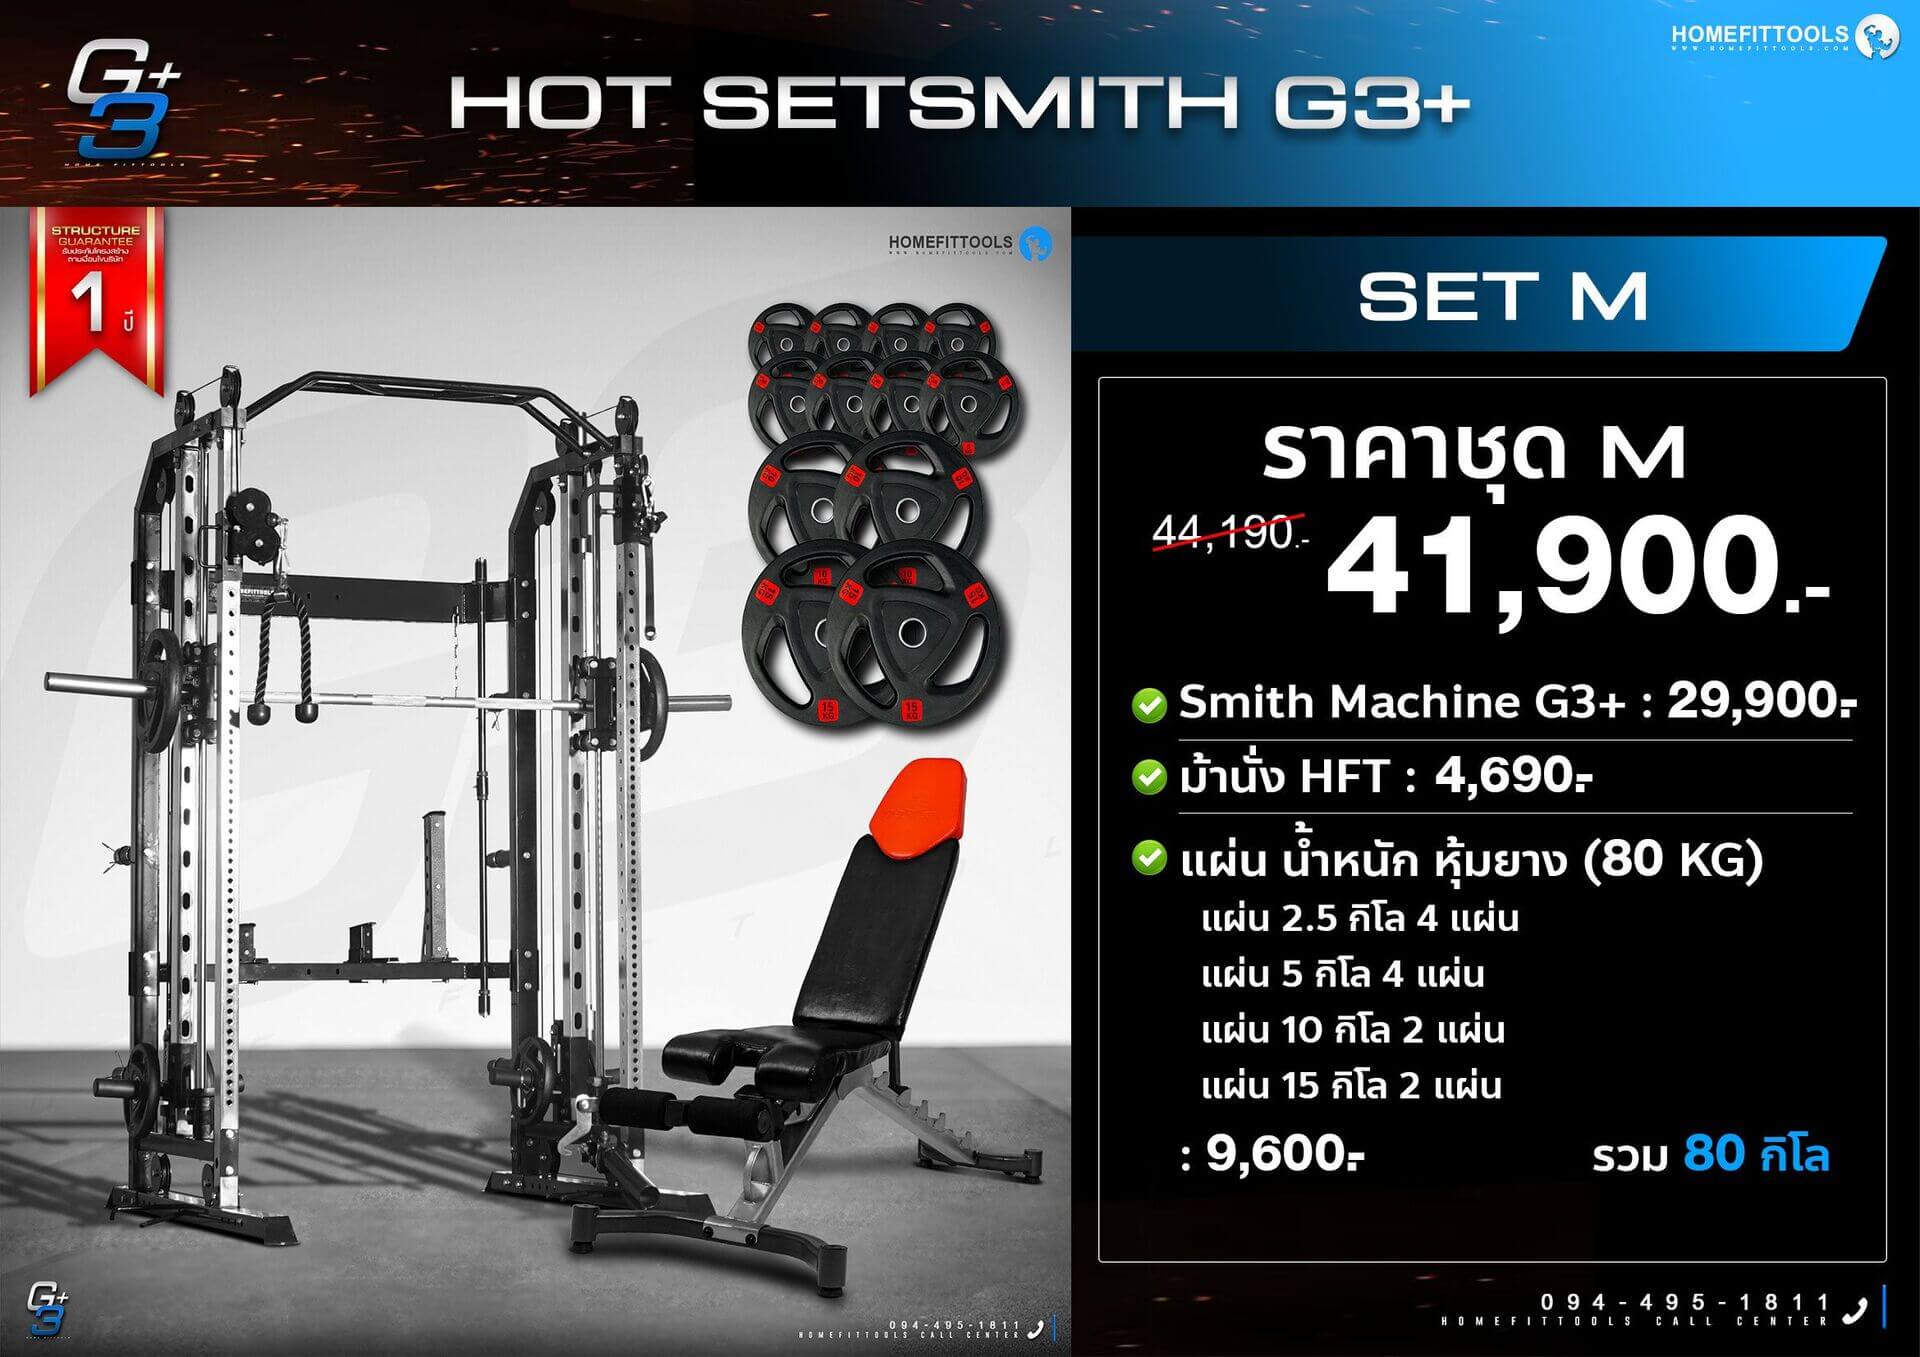 โปรโมชั่น set Smith machine G3+ สมิทแมชชีน G3+ ออกกำลังกาย เครื่องออกกำลังกาย อุปกรณ์ฟิตเนส ชุดโฮมยิม